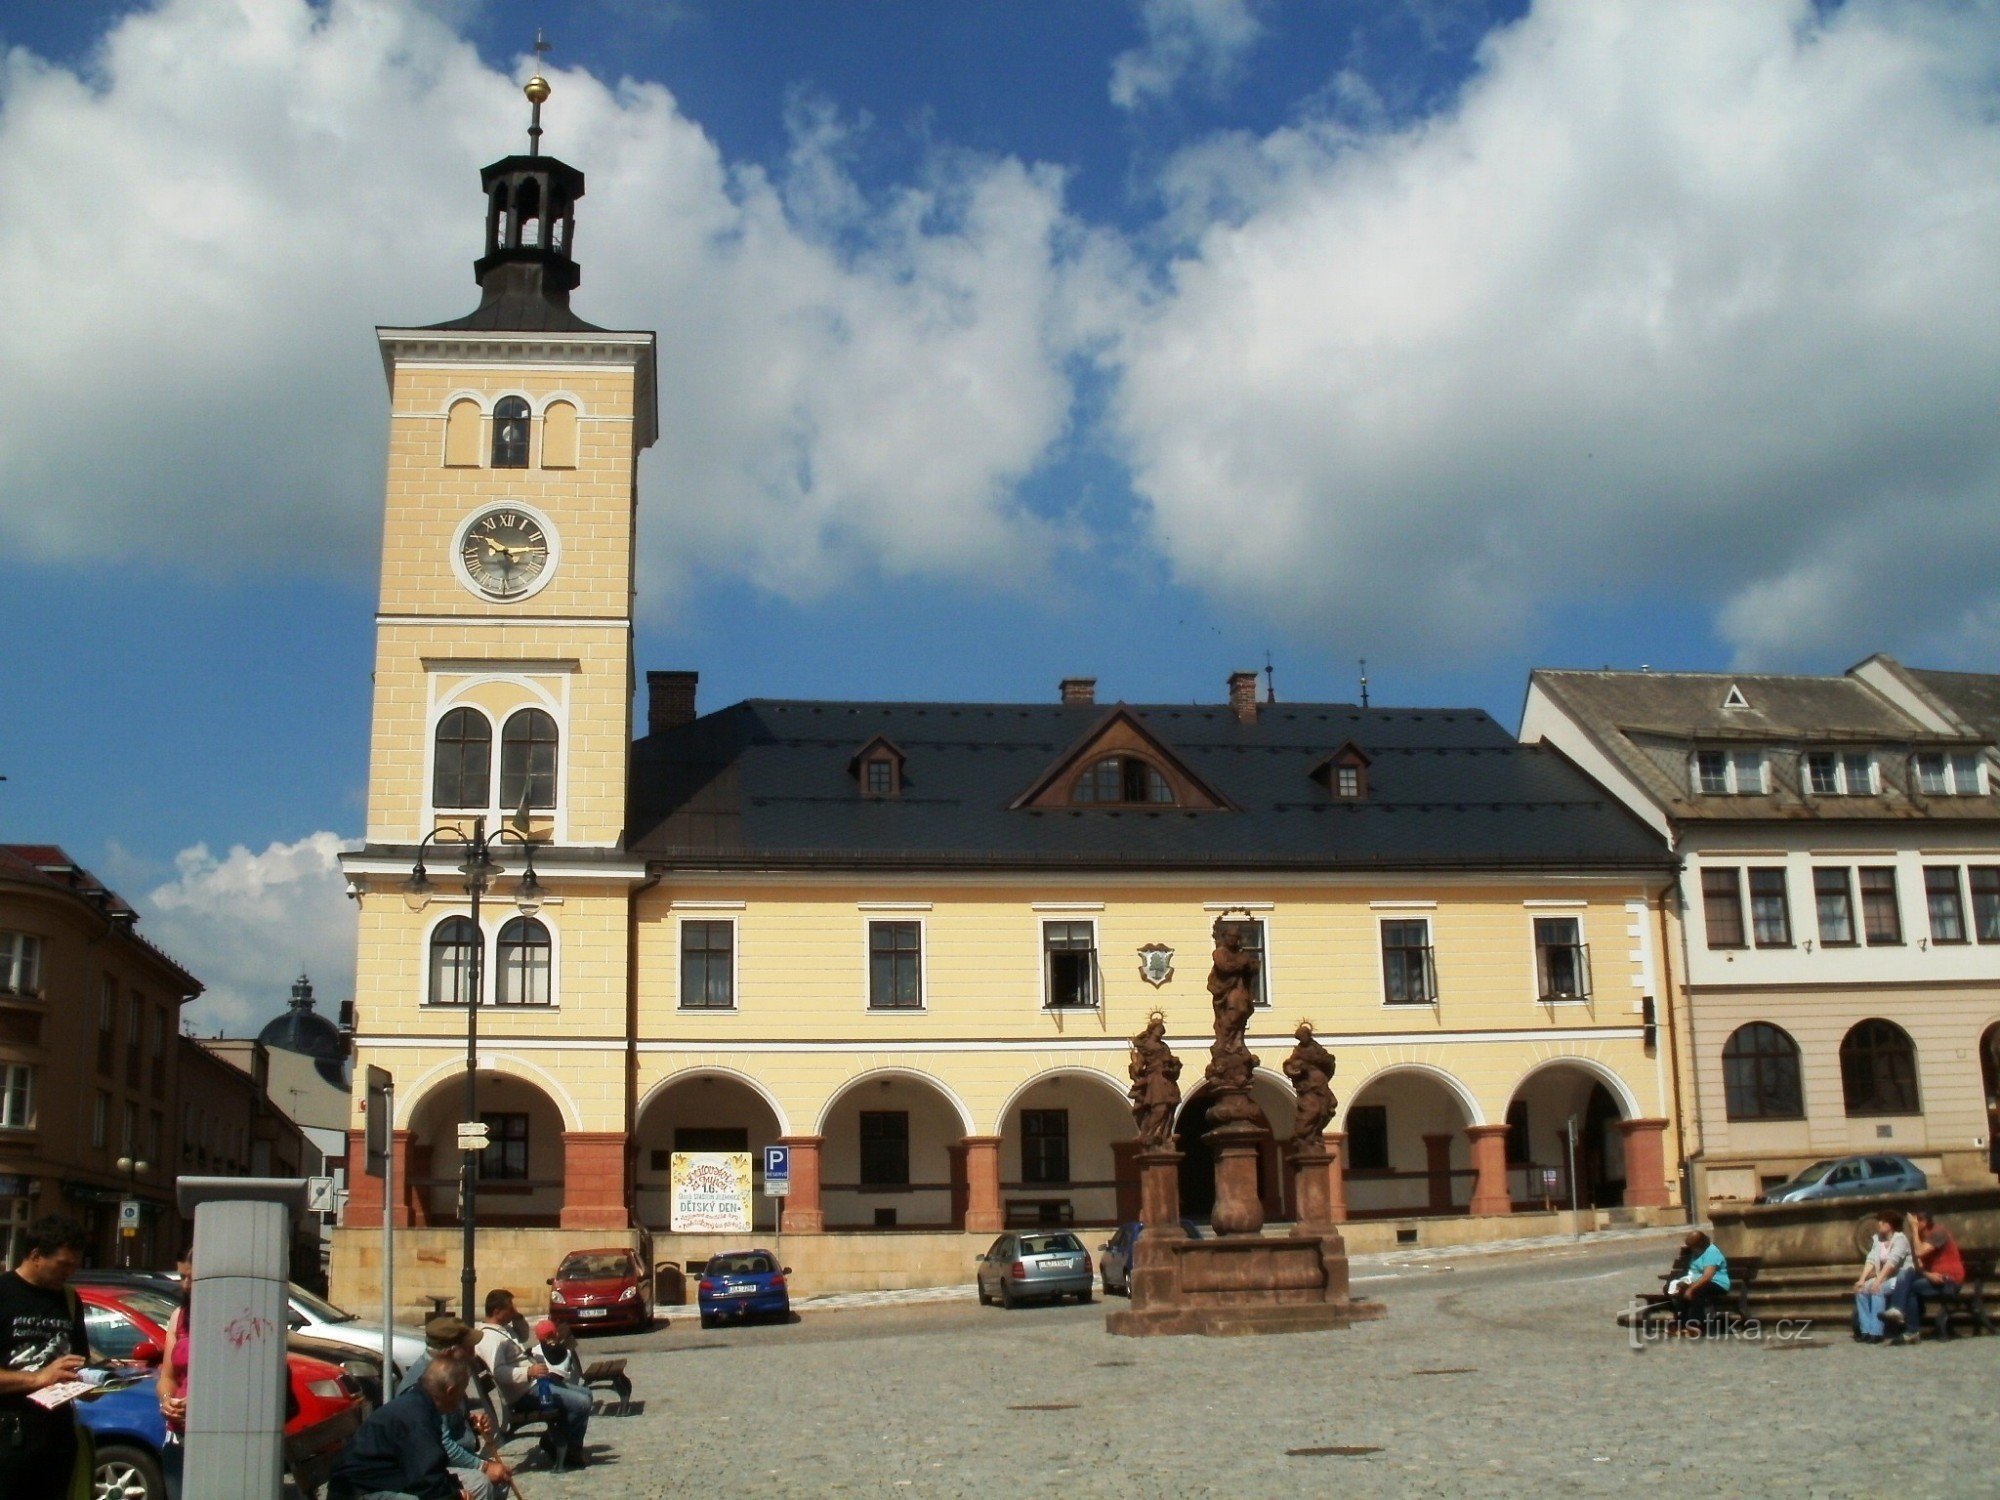 turistično križišče Jilemnice - Masarykovo náměstí